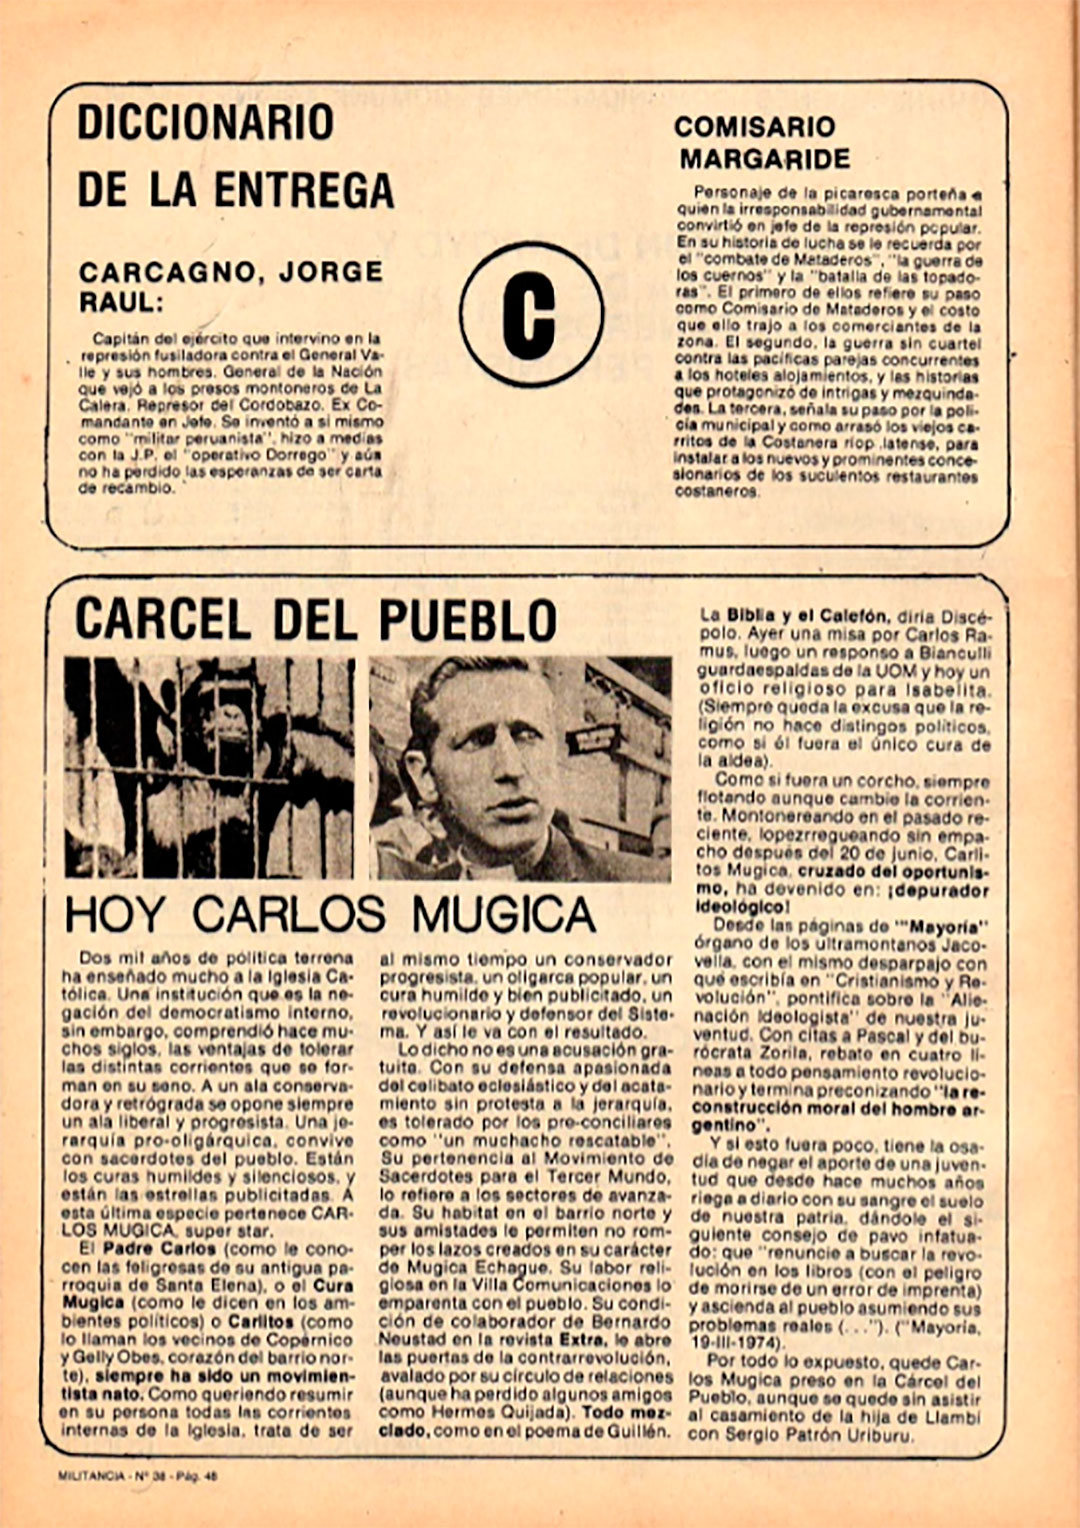 Advertencias contra el padre Carlos Mugica en un órgano de prensa de Montoneros